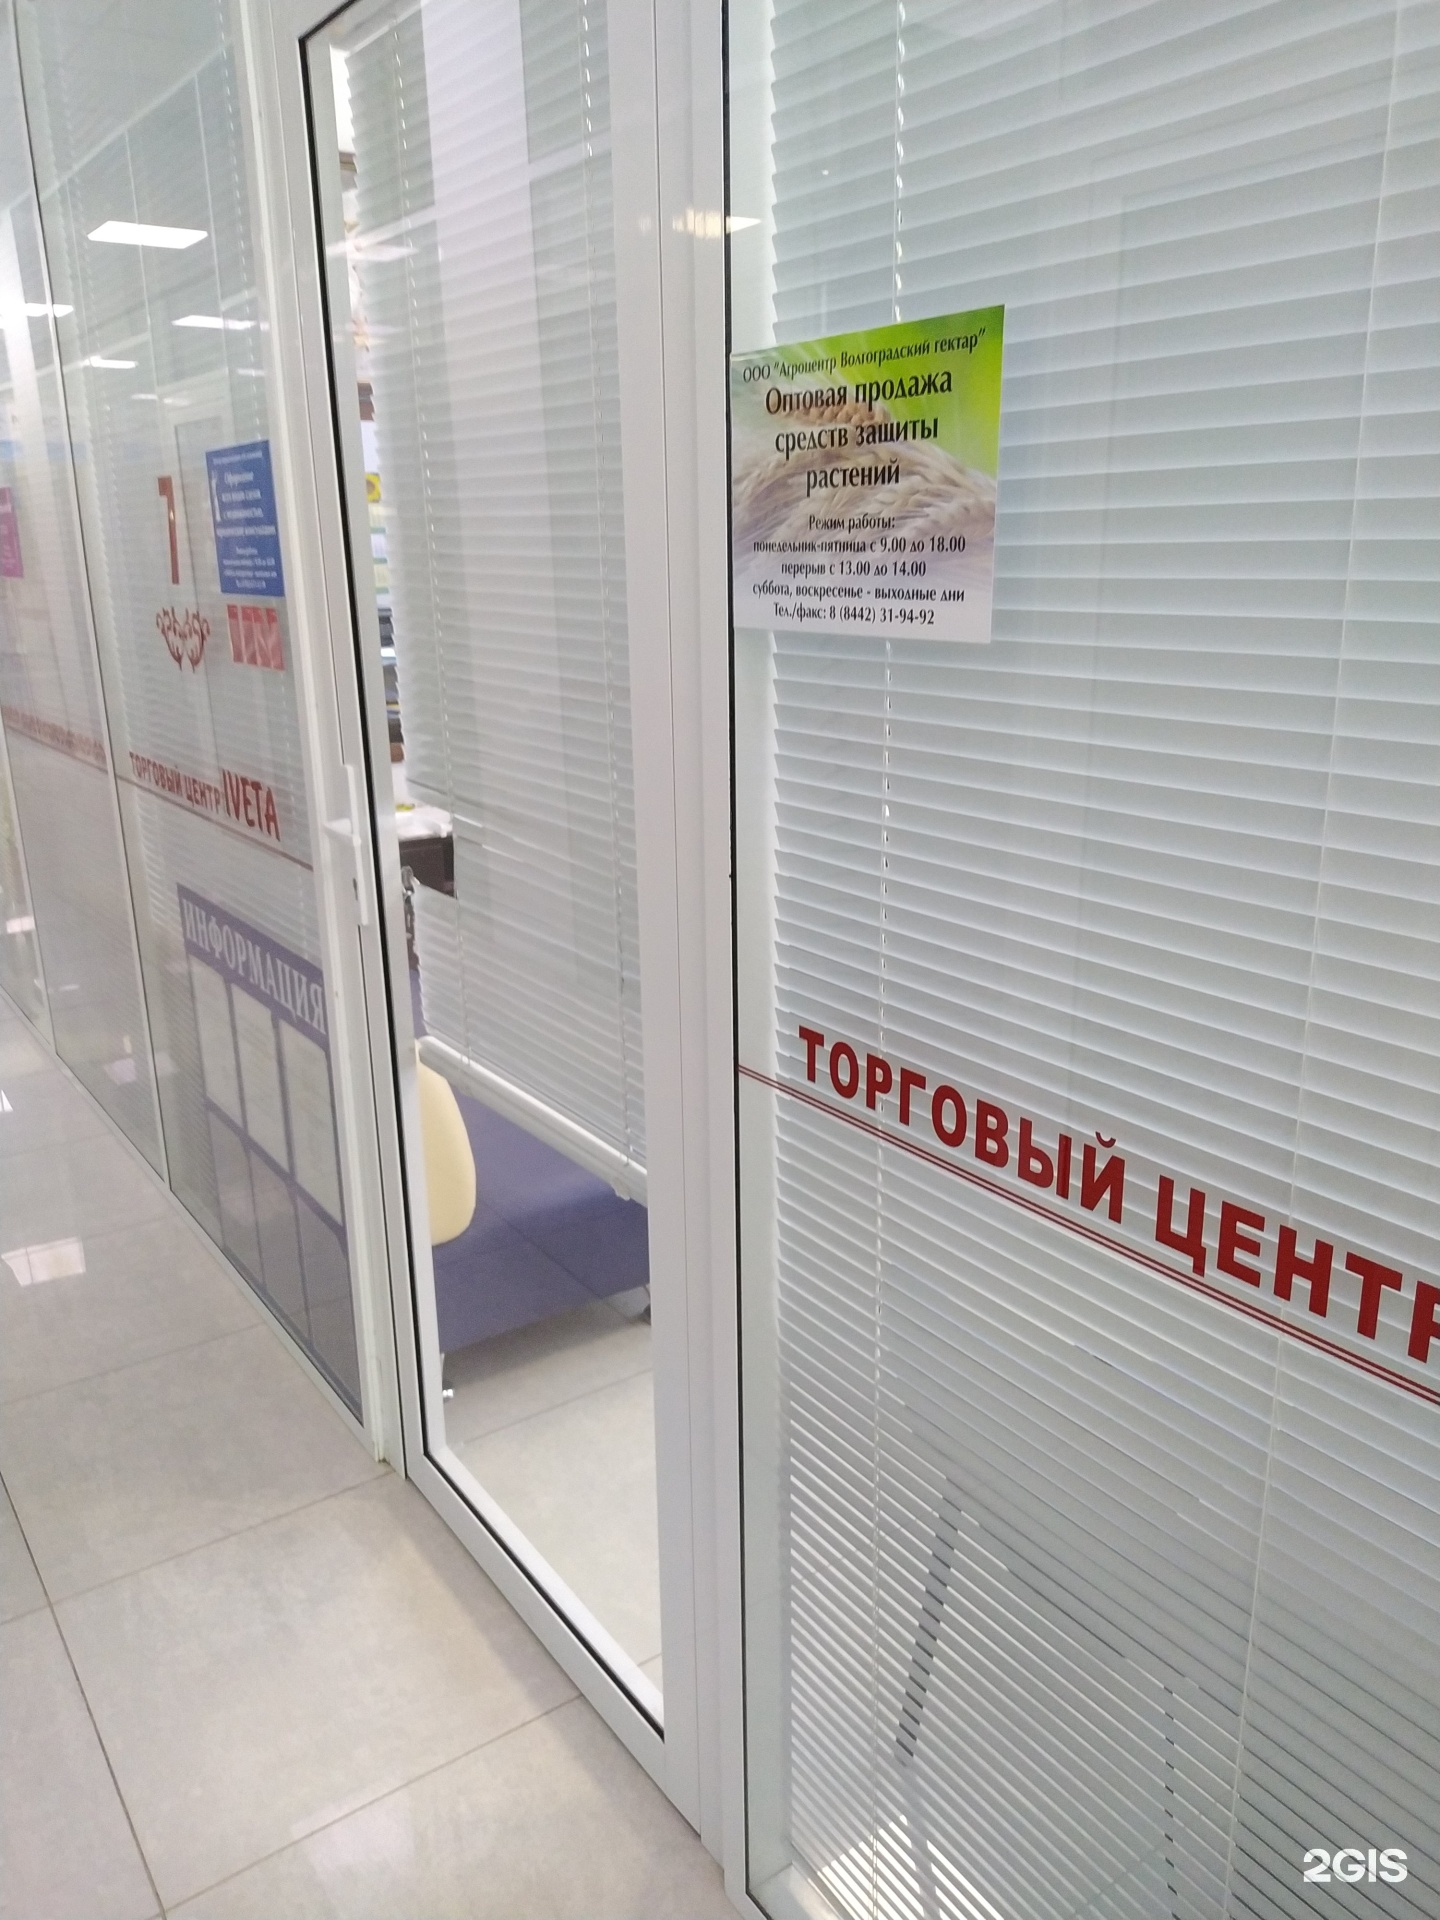 ЮЦ гарантия Новосибирск. Серова 10 правовой центр.